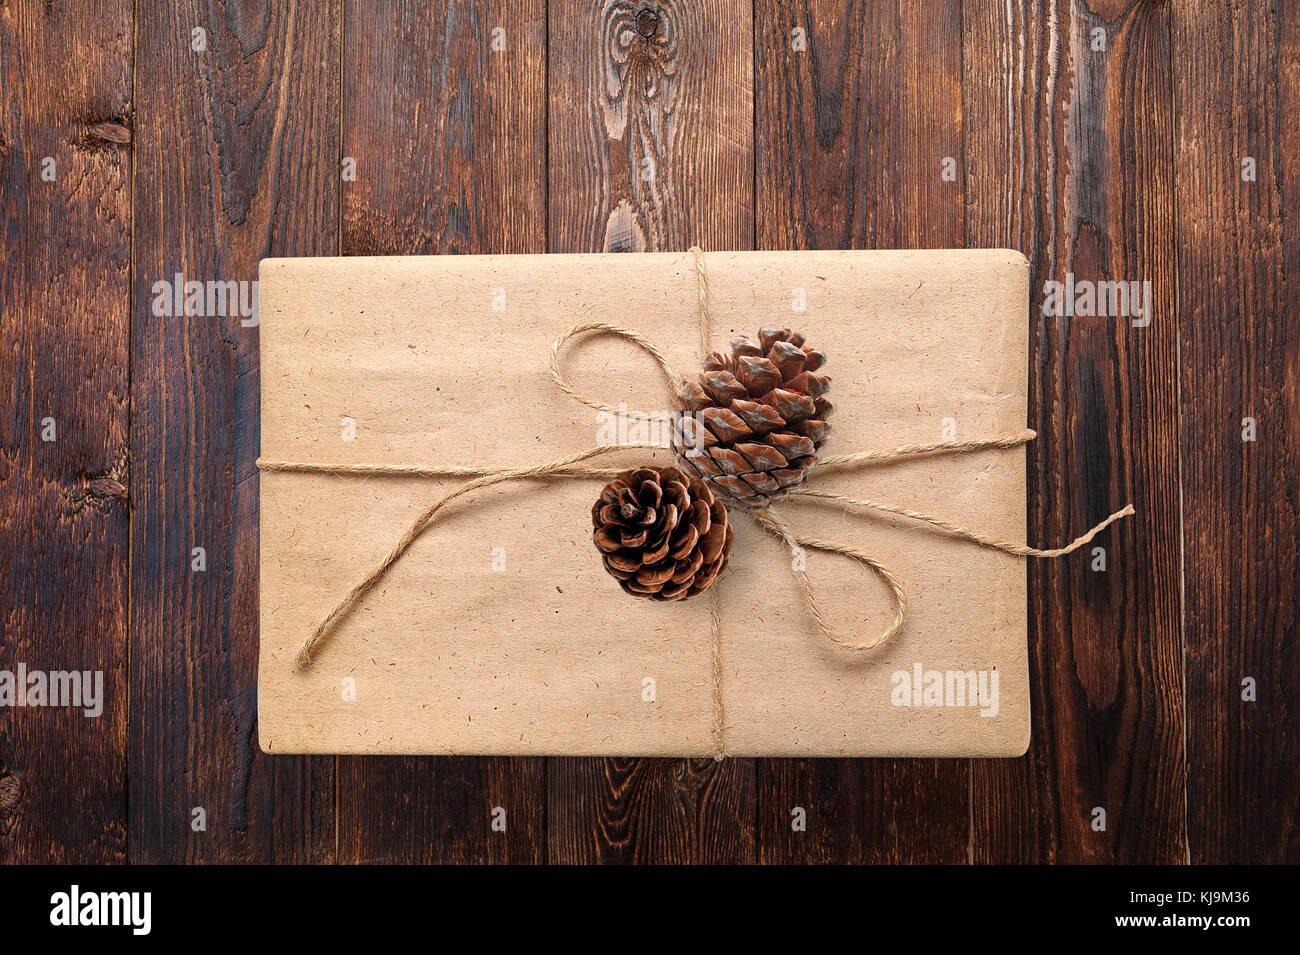 Weihnachten oder Neujahr Geschenke Geschenkkarton mit Kegel auf einem hölzernen natürlichen warmen weiße Oberfläche Blick von oben. closeup mit Freistellungspfad Stockfoto